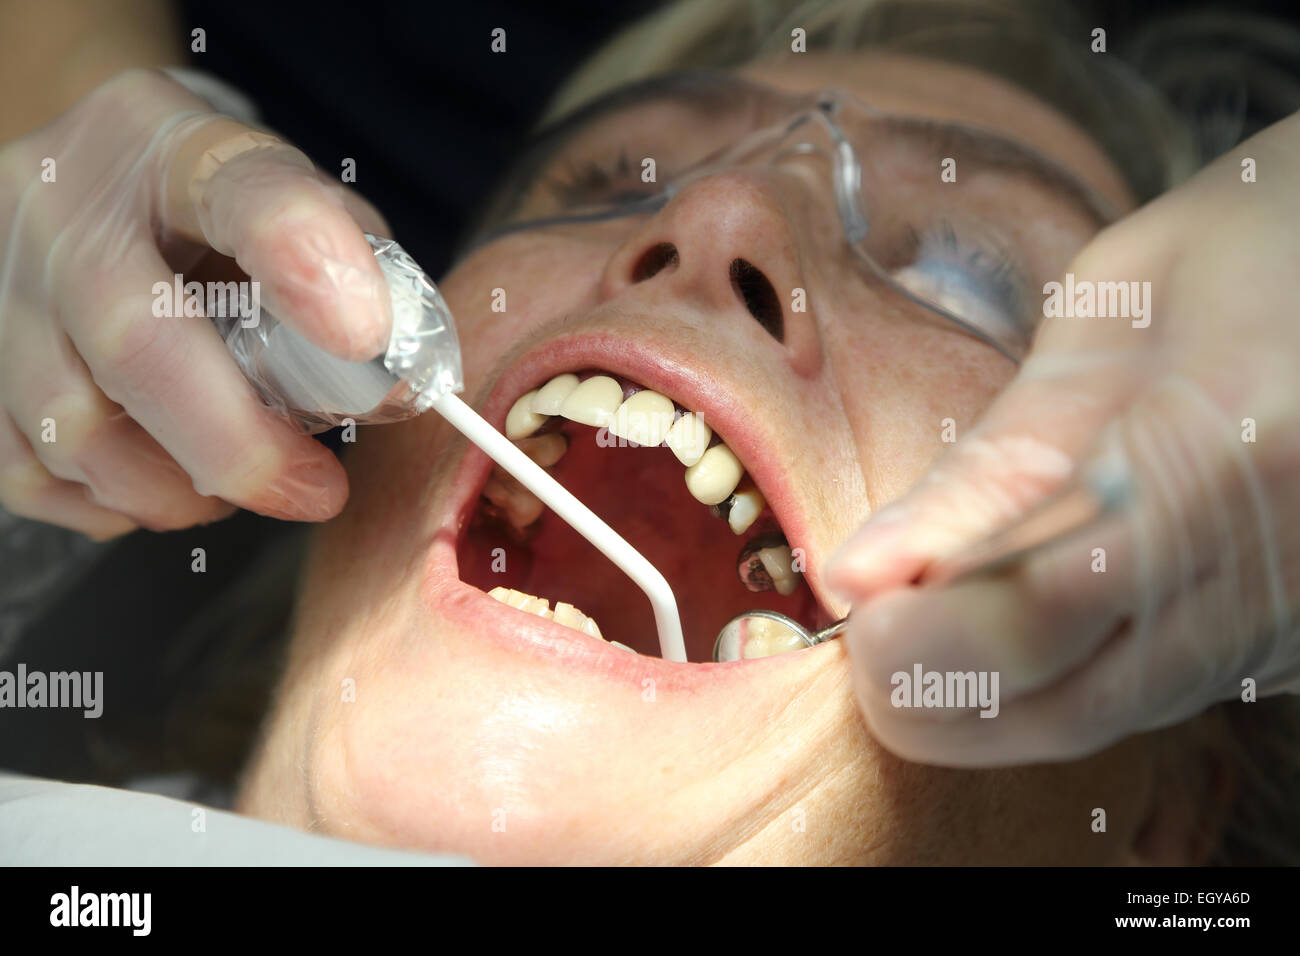 Frau beim Zahnarzt - Modell veröffentlicht Stockfoto